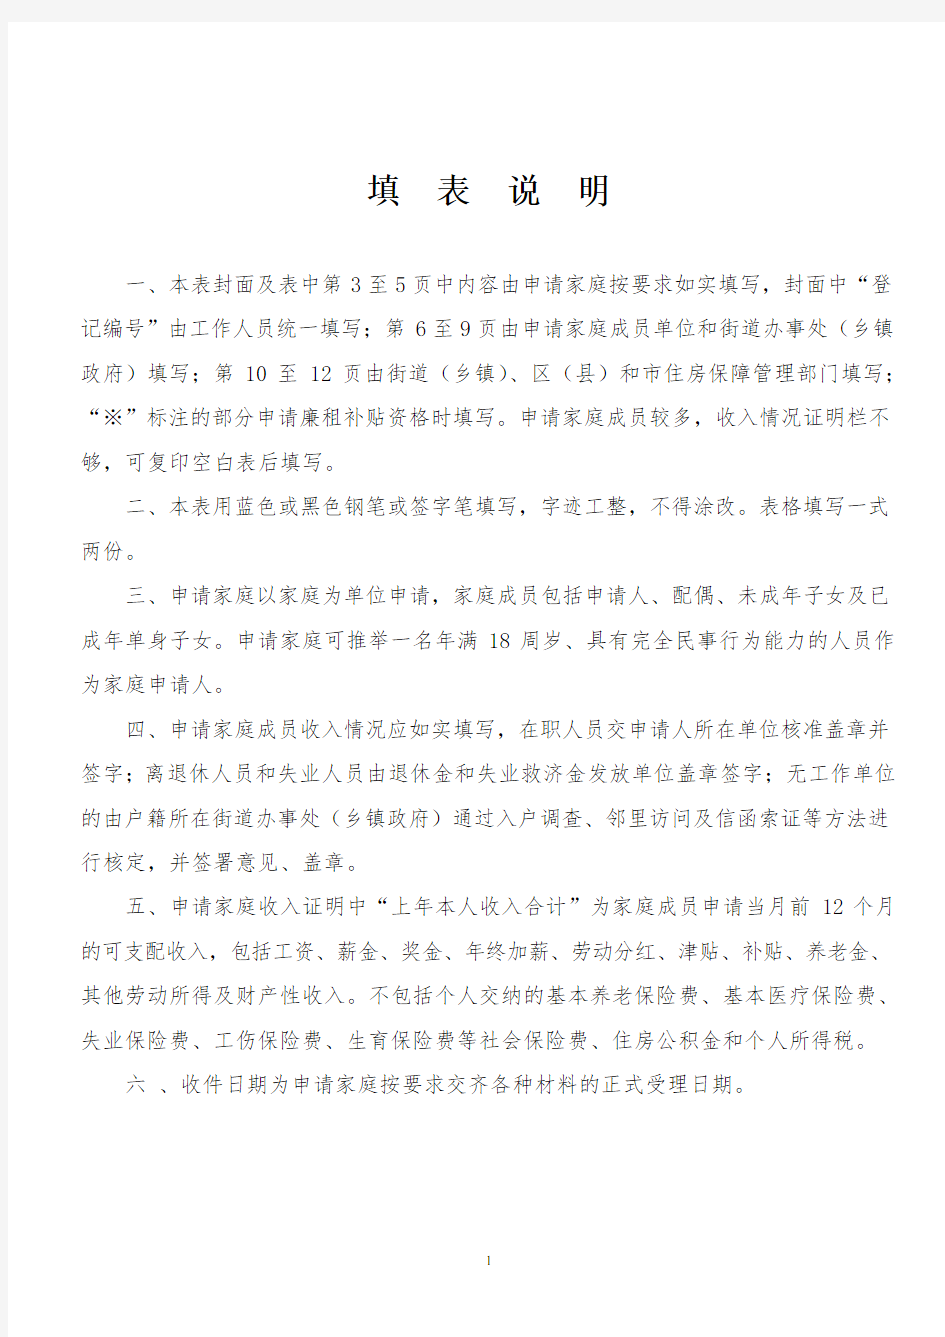 北京市保障性住房申请家庭情况核定表最新版